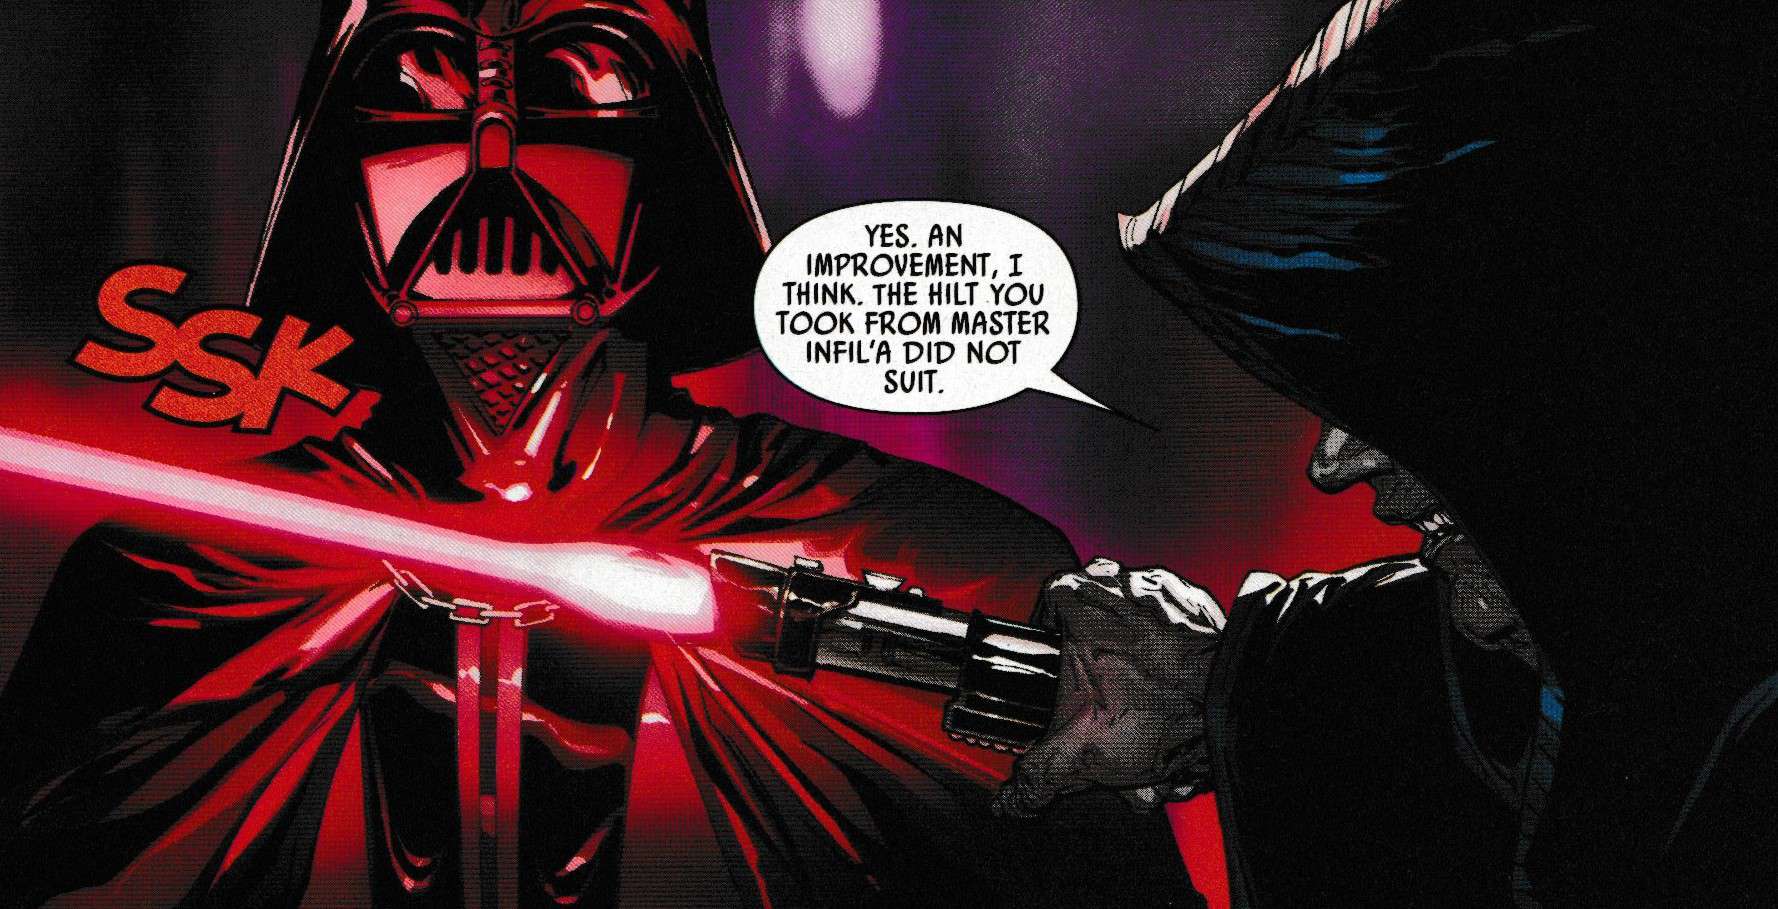 Emperor Vader